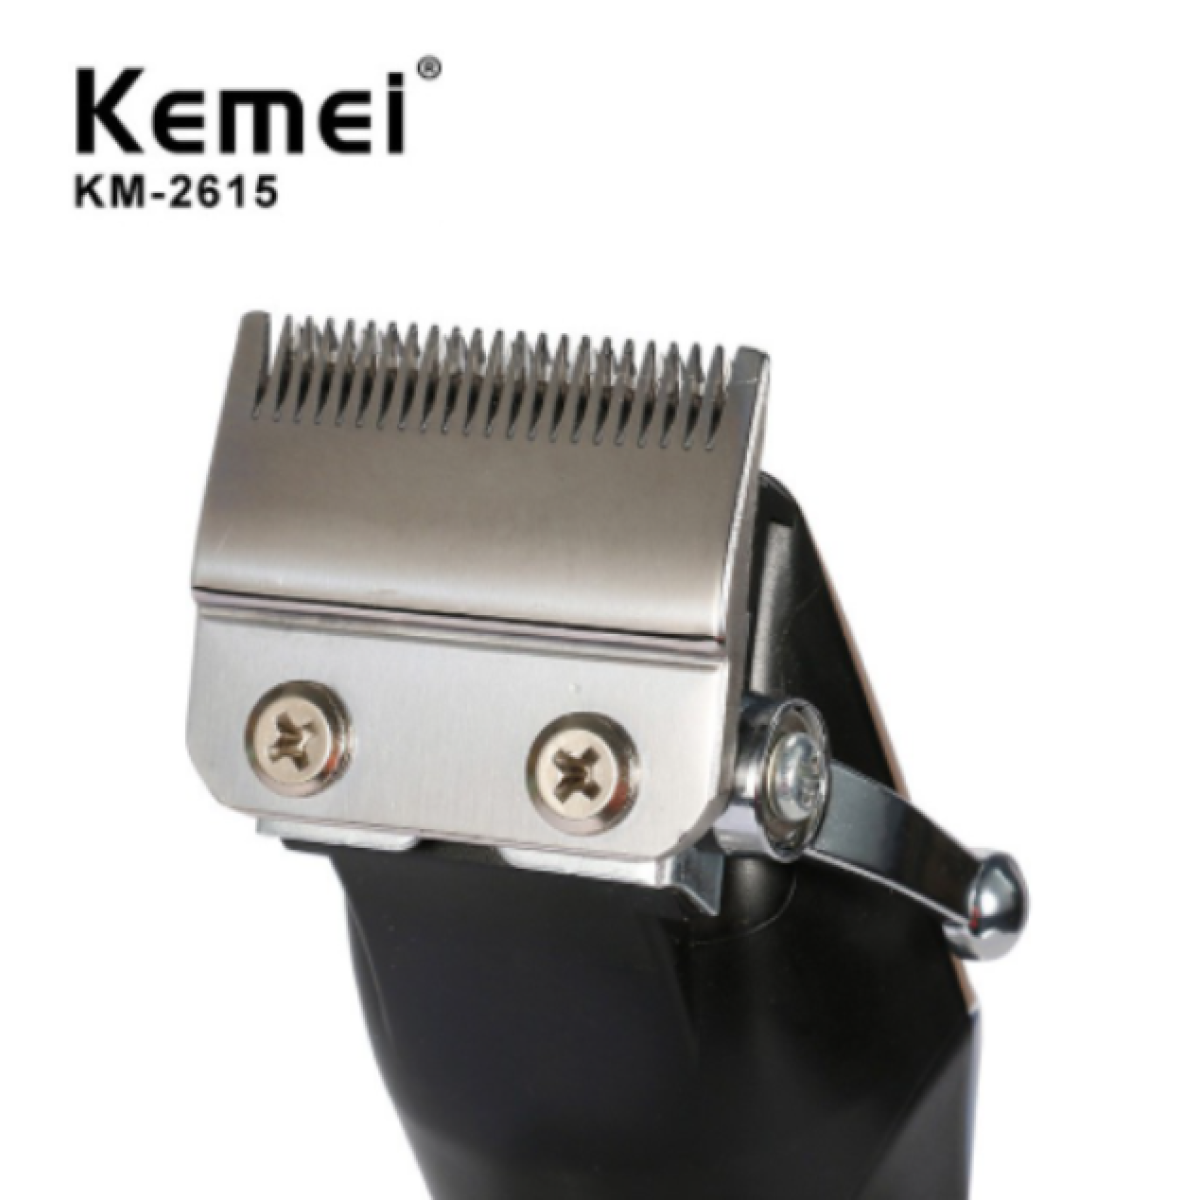 Ηλεκτρική επαναφορτιζόμενη κουρευτική μηχανή μαλλιών KM-2615 Kemei